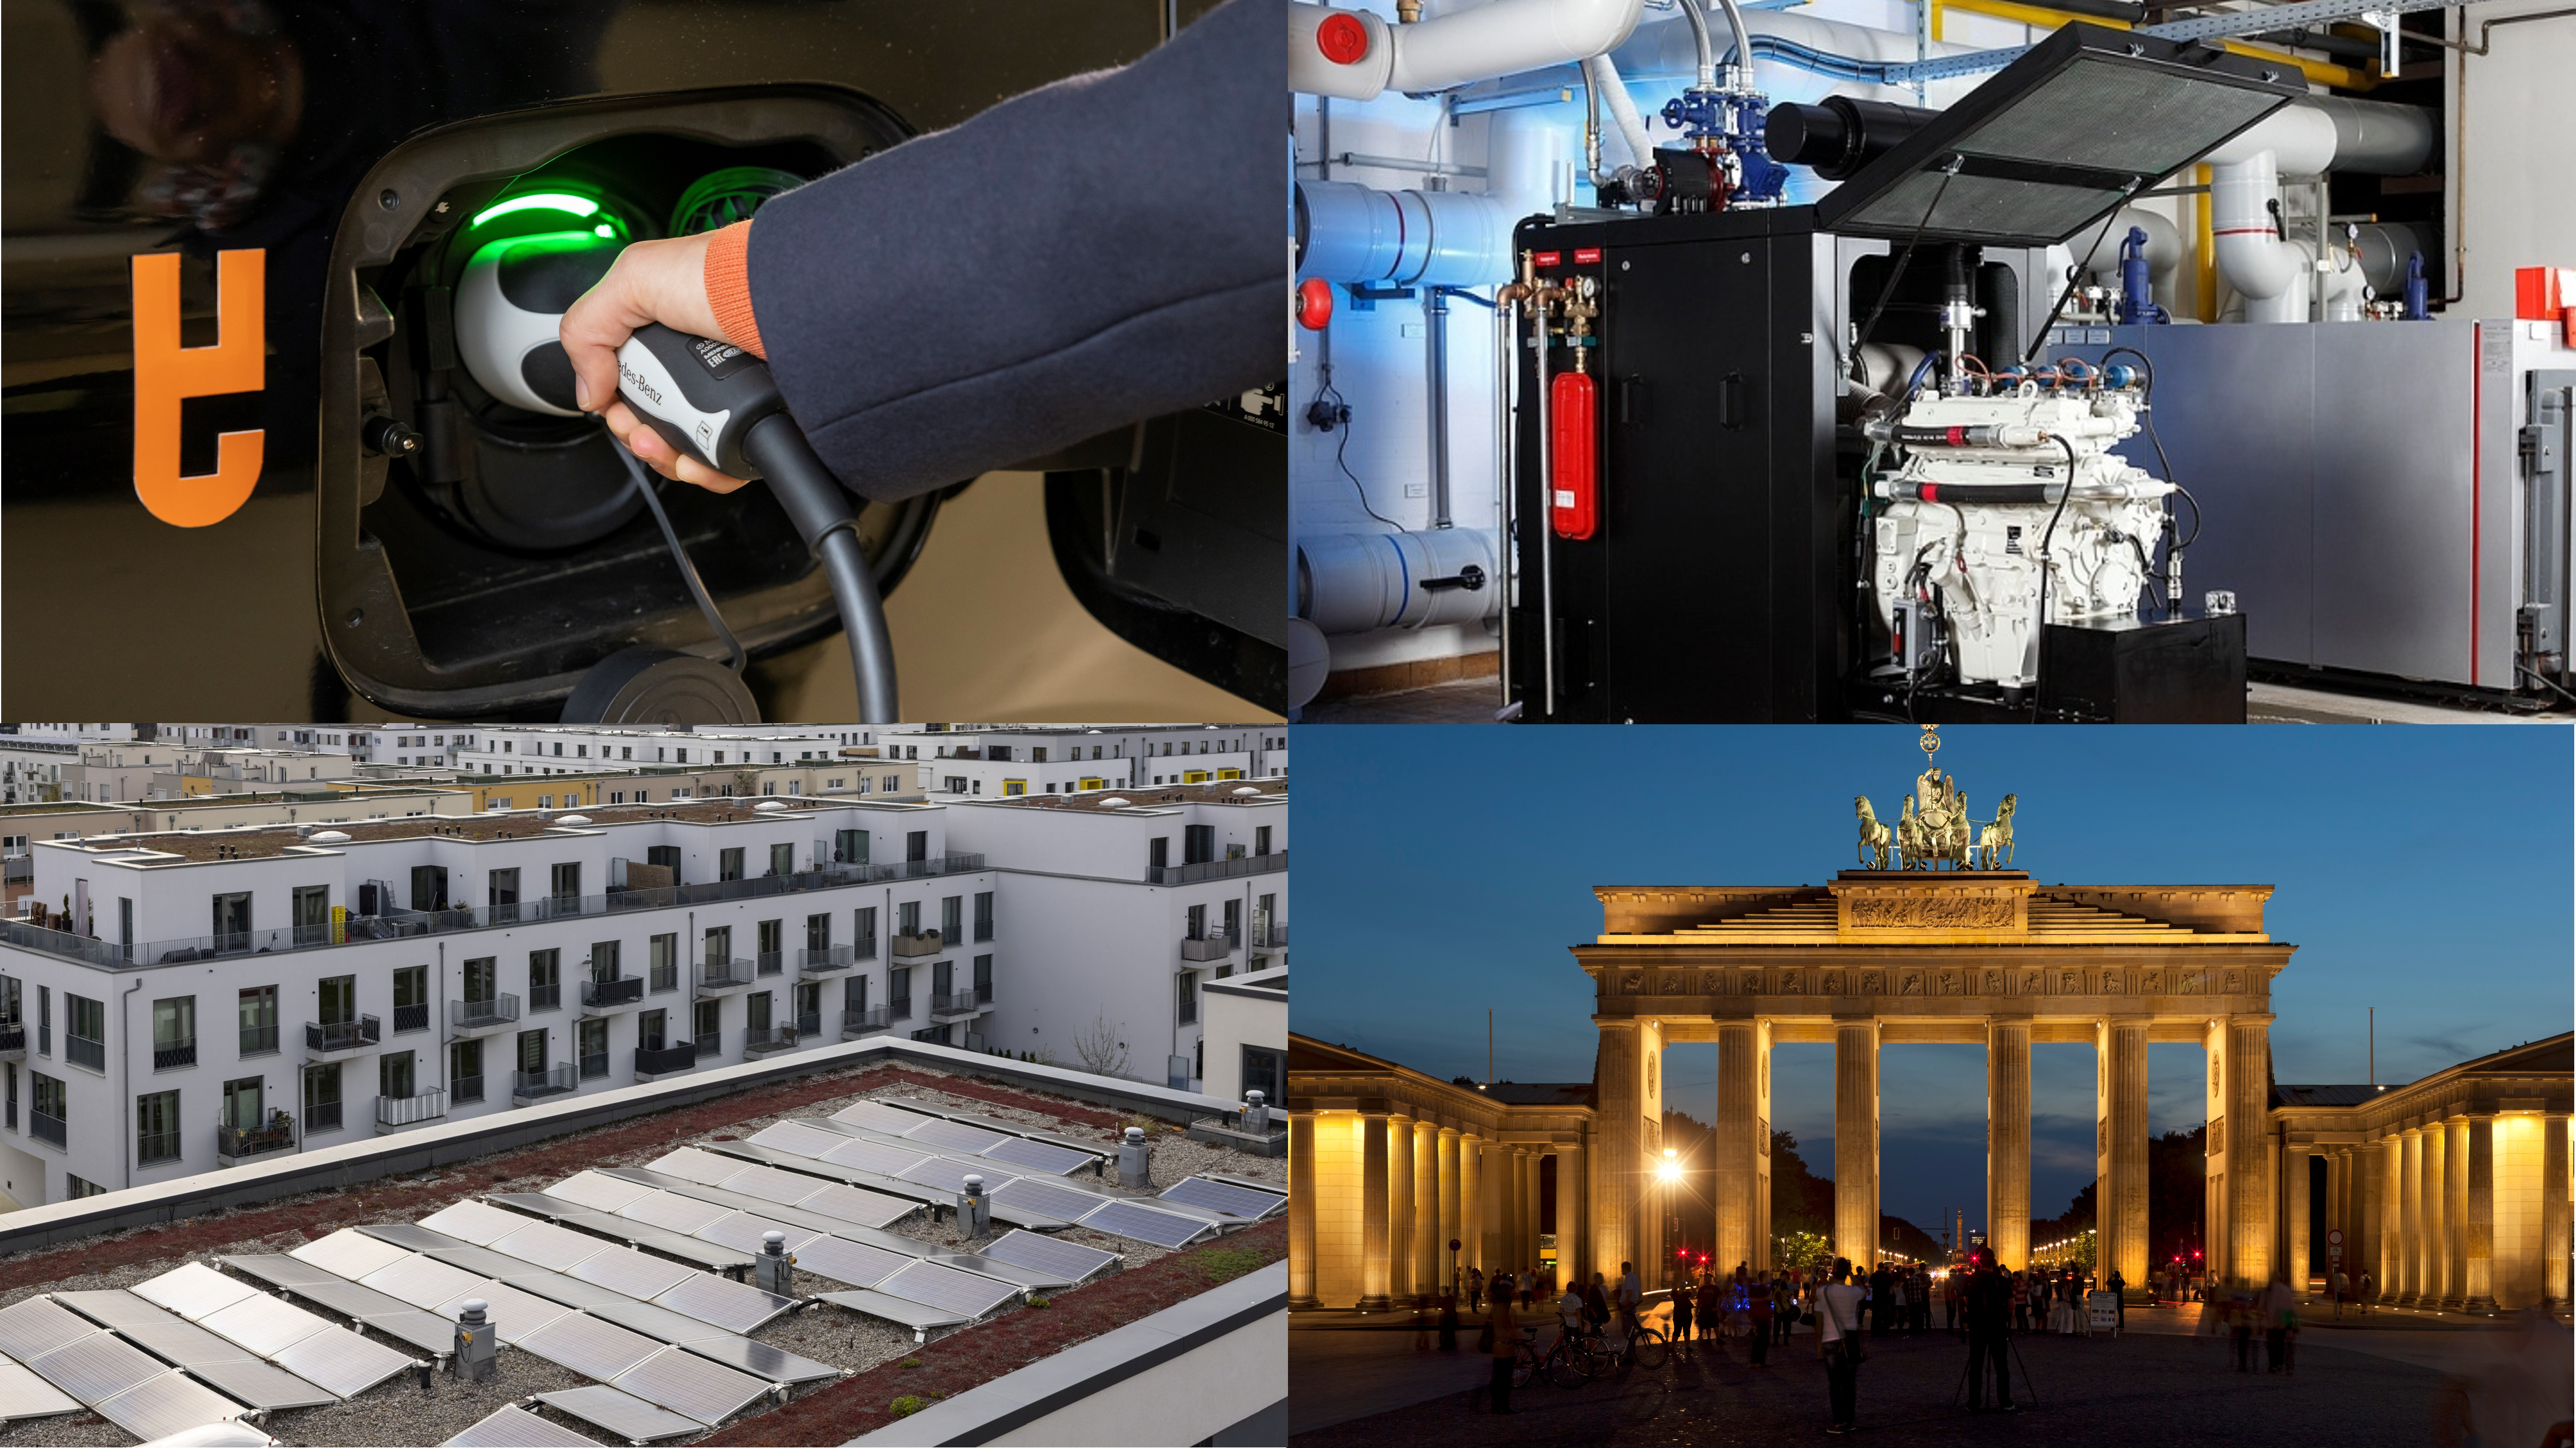 Erneuerbare Energien, Energieeffizienz und Elektromobilität - drei Themenfelder der Berliner Energieagentur